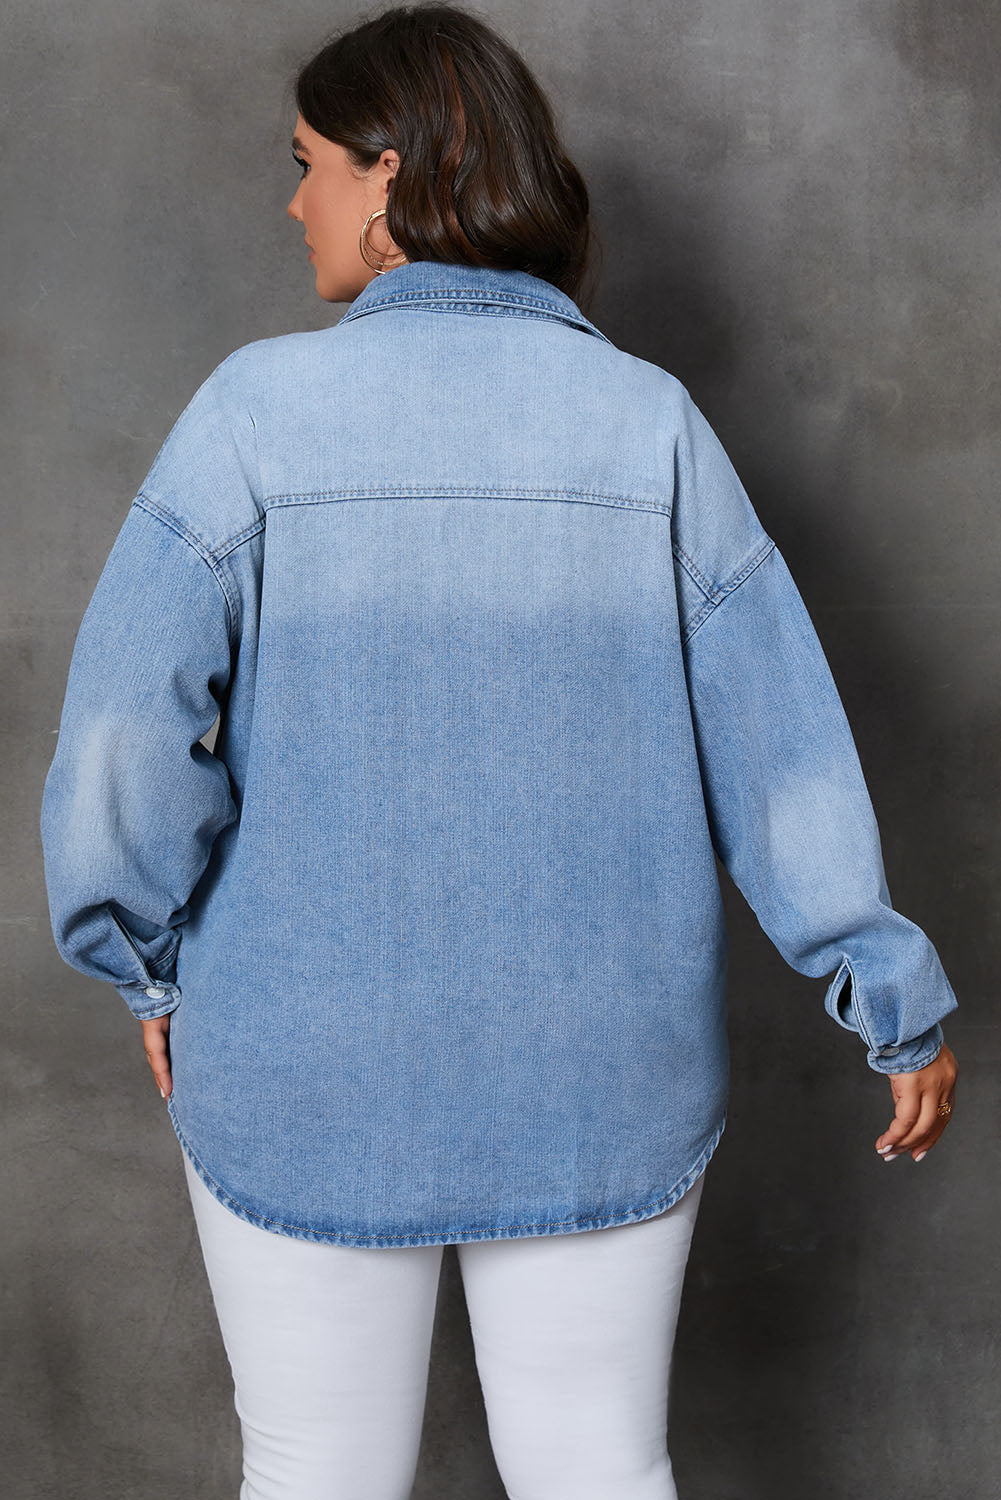 Veste en jean boutonnée avec poche poitrine de grande taille bleu ciel